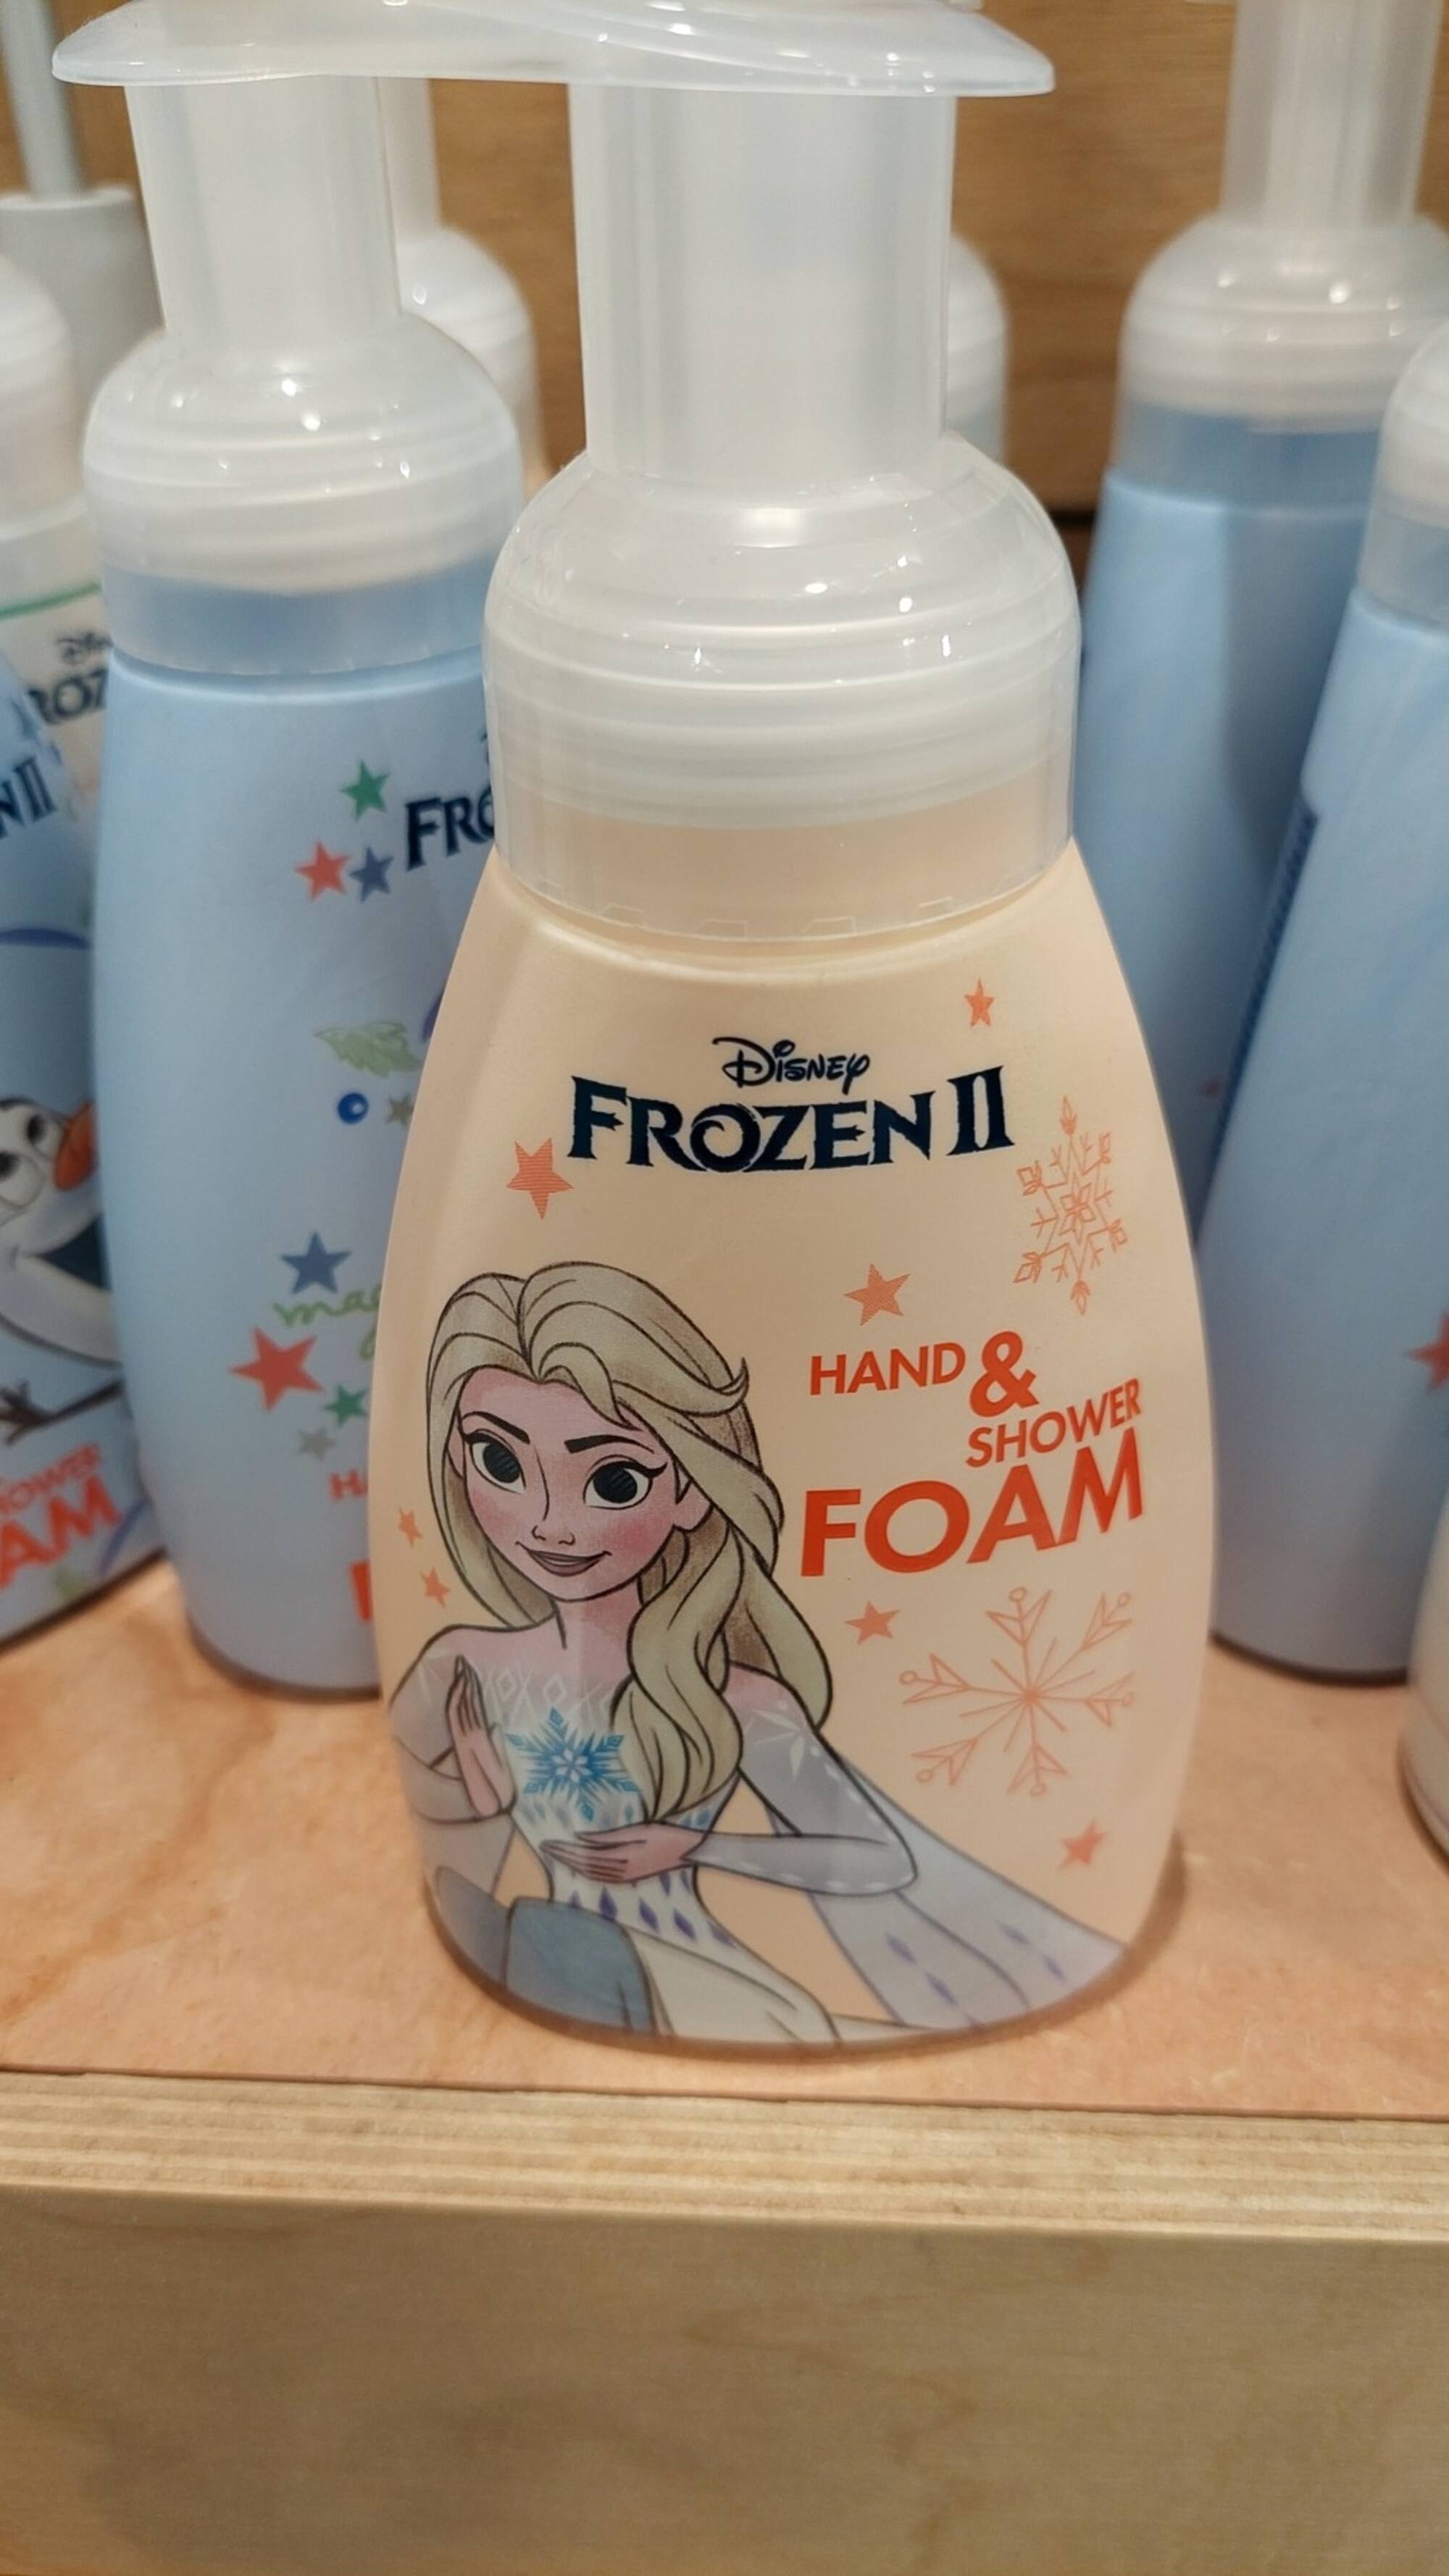 DISNEY FROZEN II - Hand & shower foam